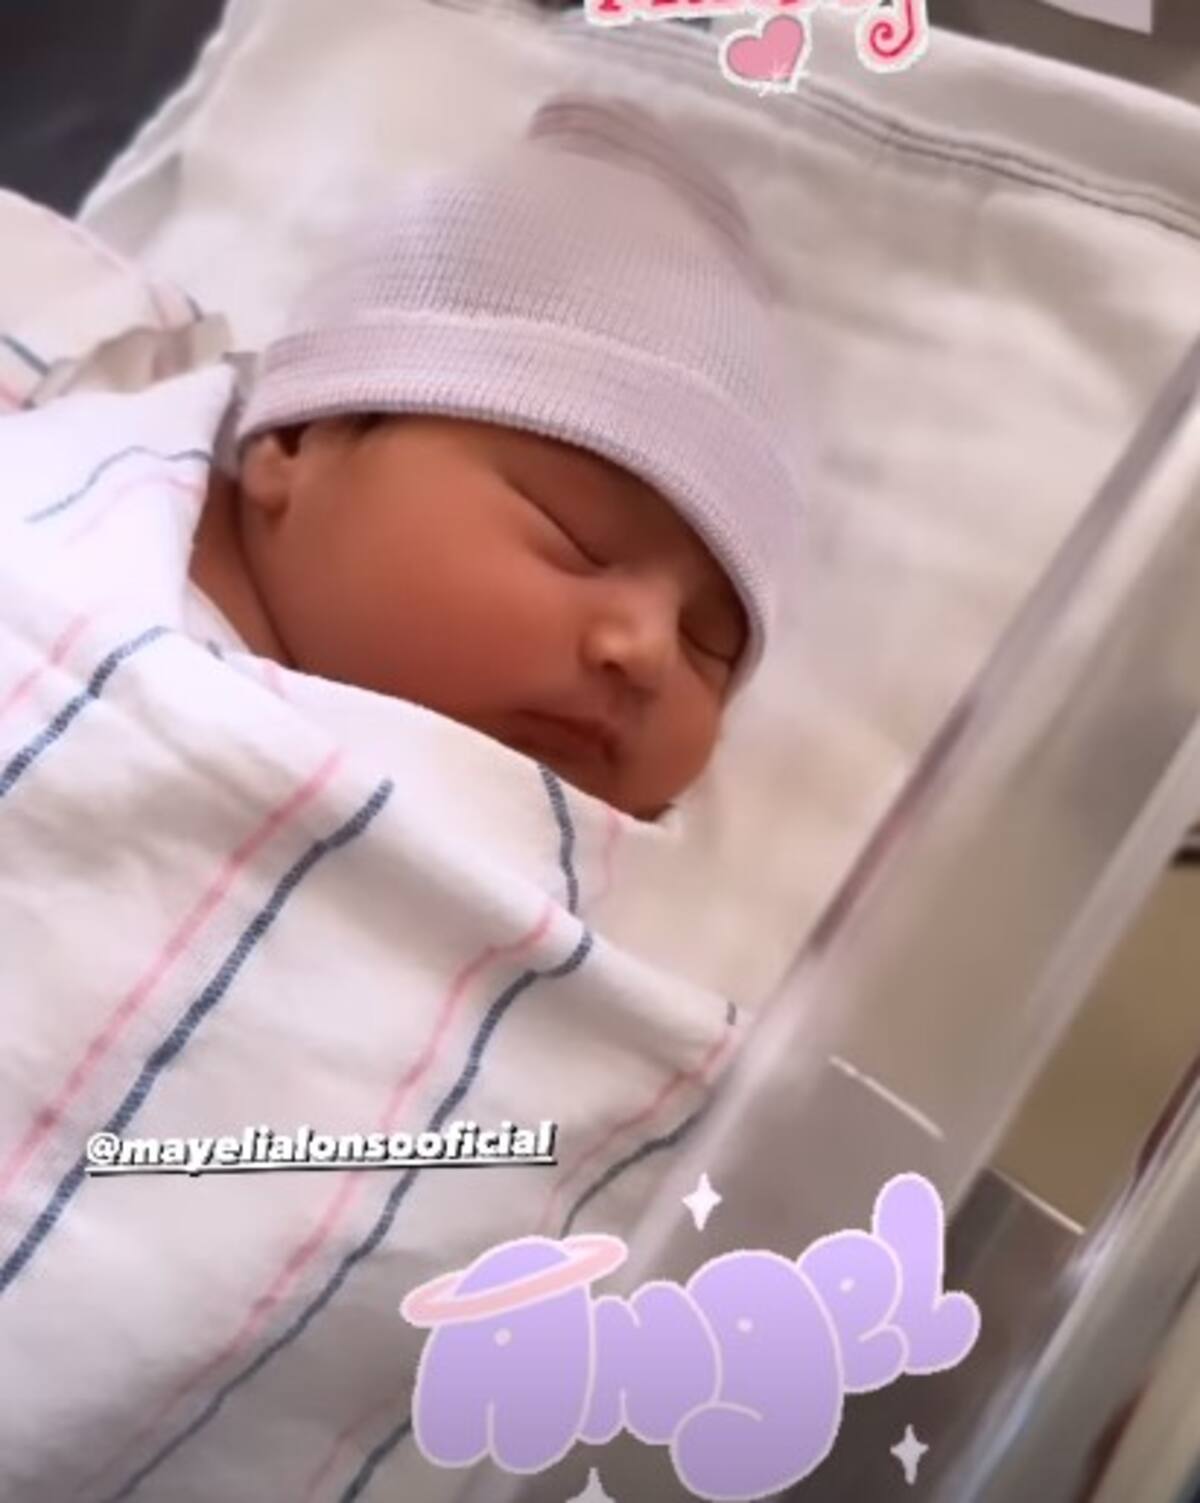 La bebé de Mayeli Alonso nació el 2 de julio. Vía Instagram.